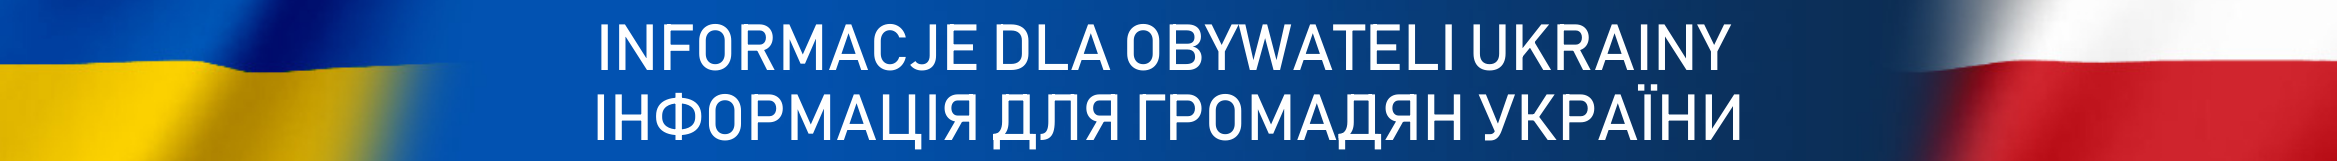 Baner Informacje dla obywateli Ukrainy